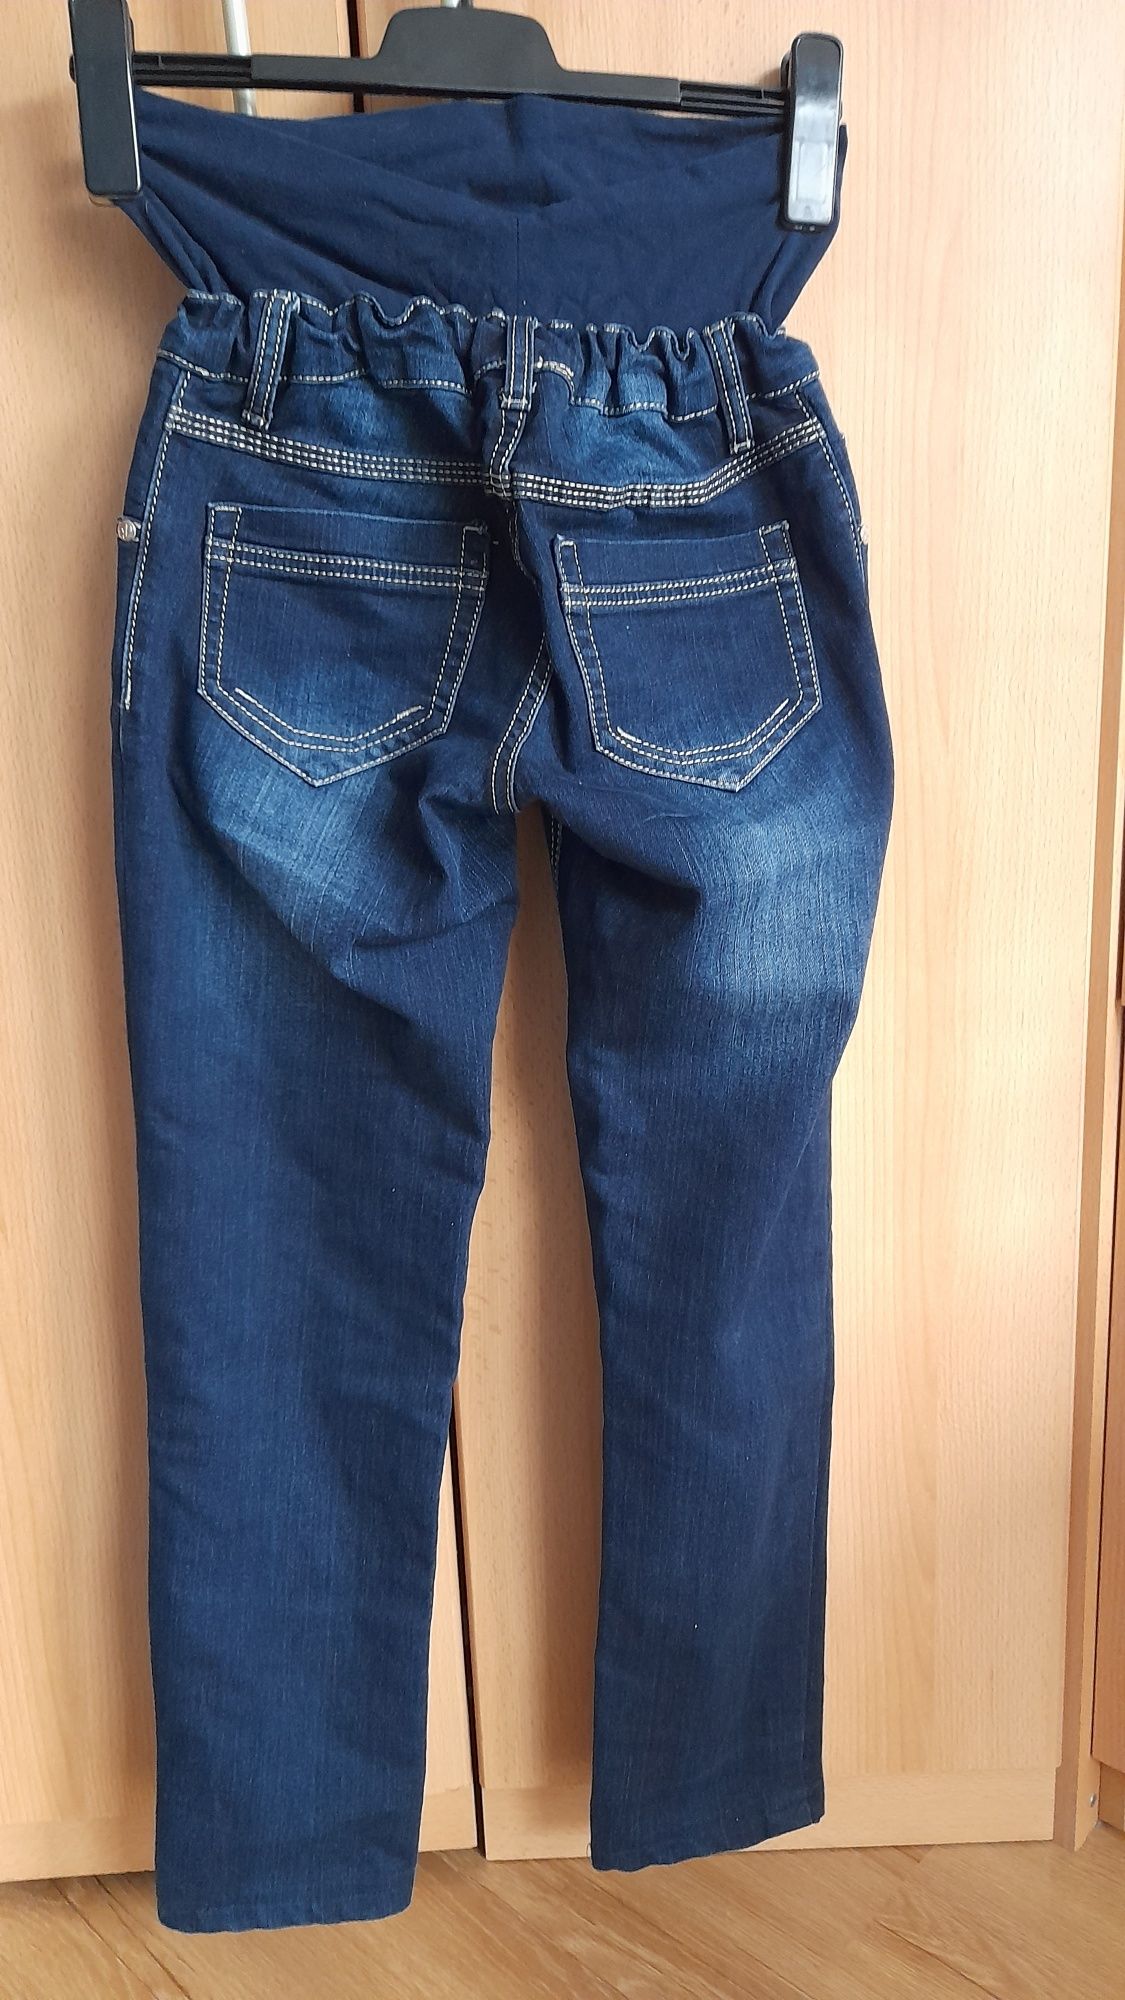 Spodnie jeansowe damskie ciążowe rozmiar S